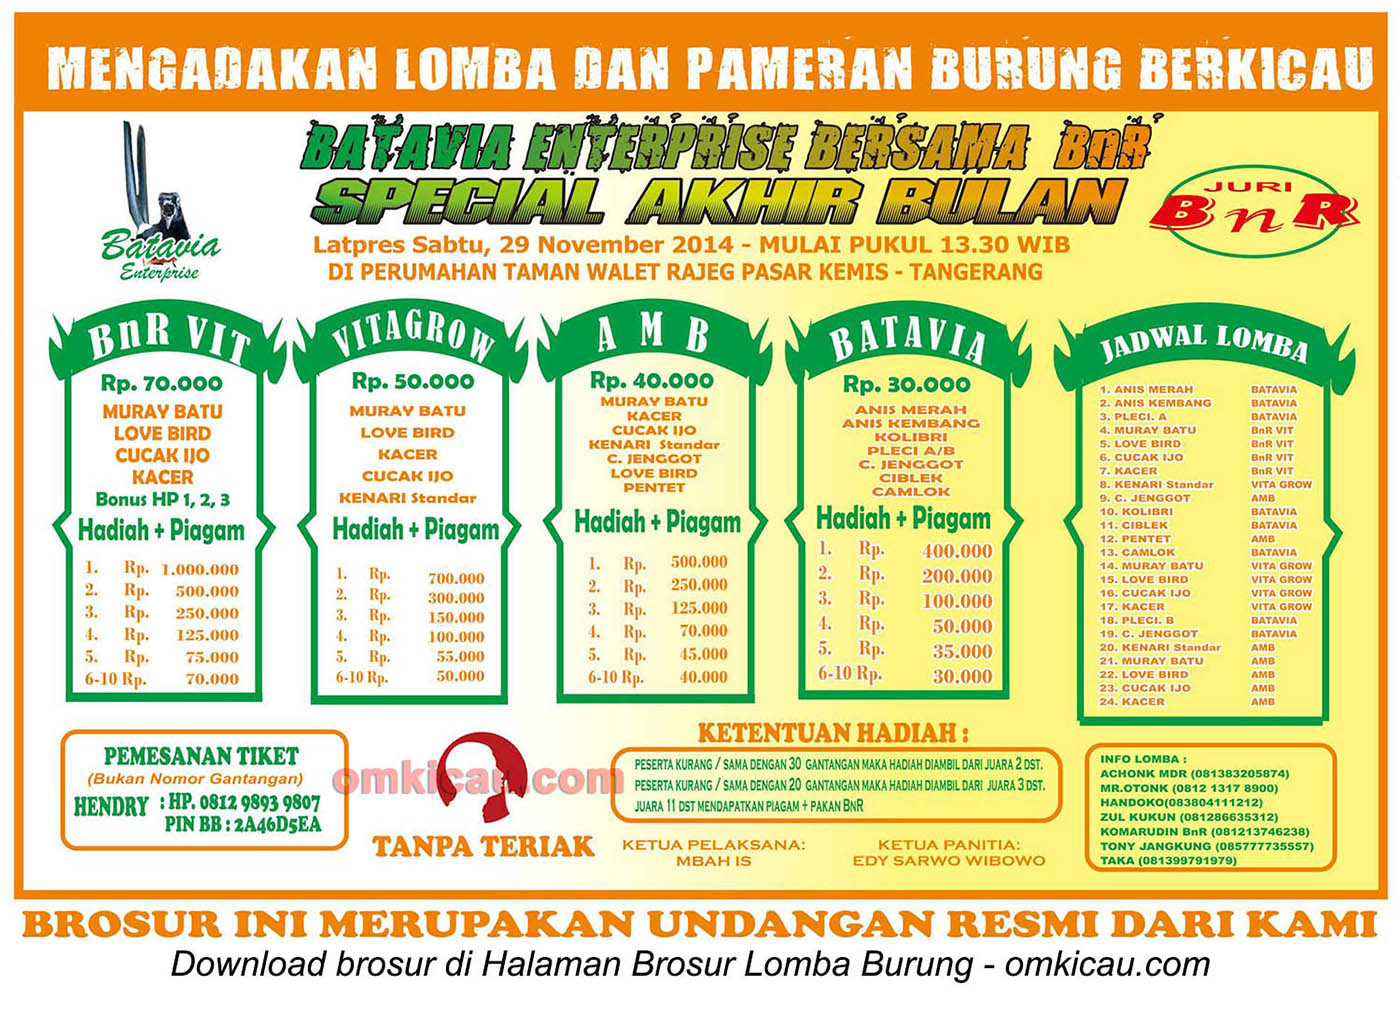 Brosur Lomba Burung Batavia Enterprise Special Akhir Bulan, Tangerang, 29 November 2014